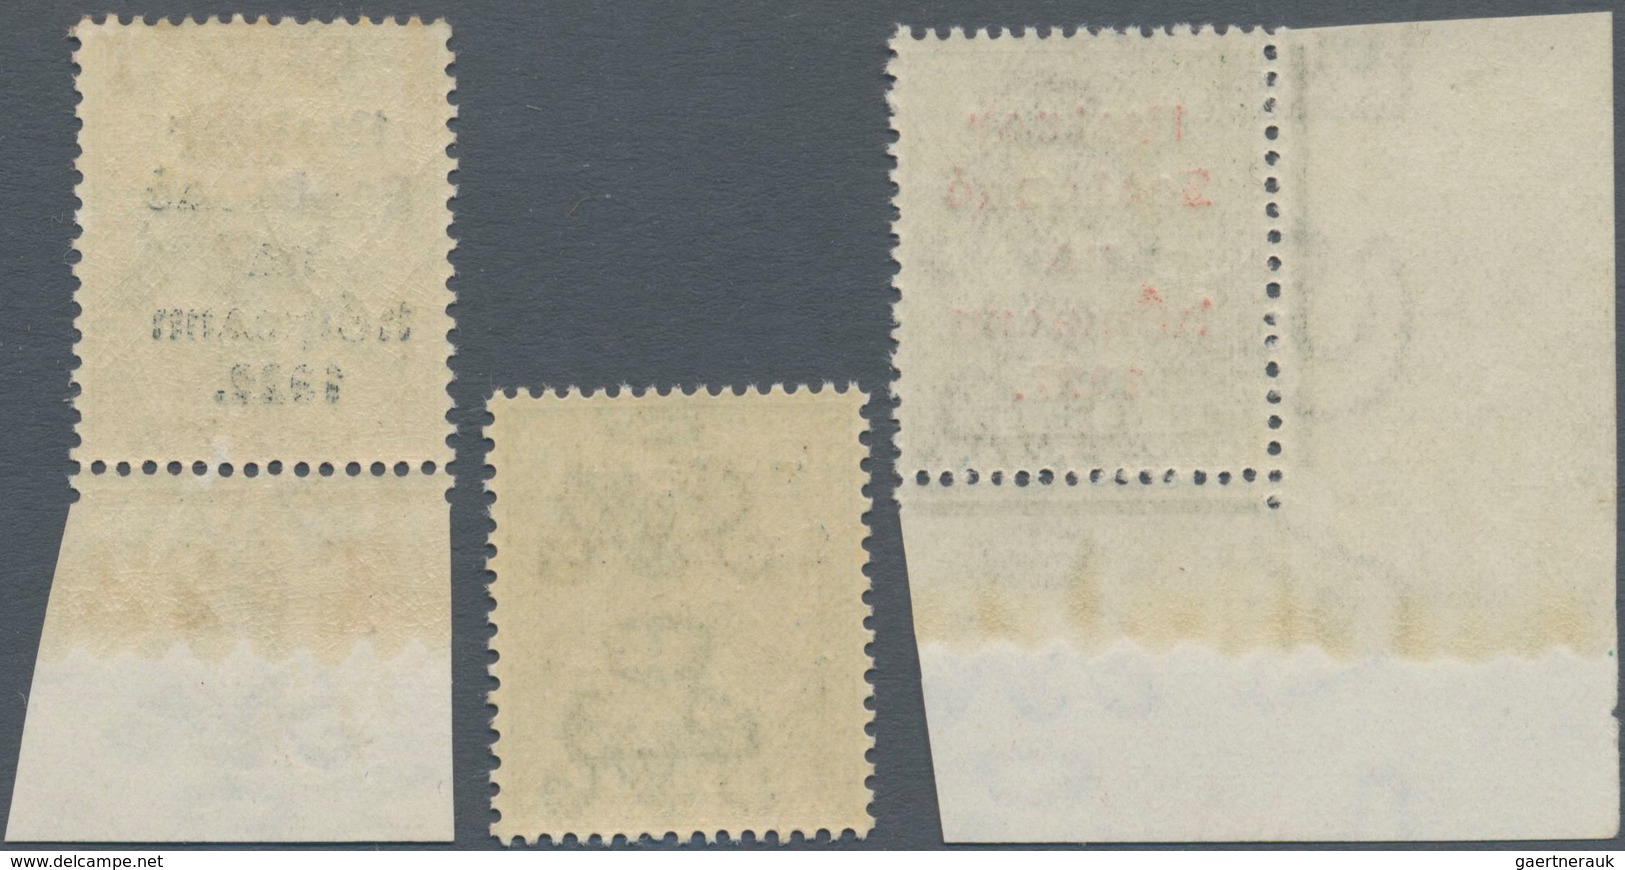 Irland: 1922, Rialtas Overprints, Thom Printing, ½d. To 1s., Set Of 14 Values Mint Original Gum, Mai - Briefe U. Dokumente